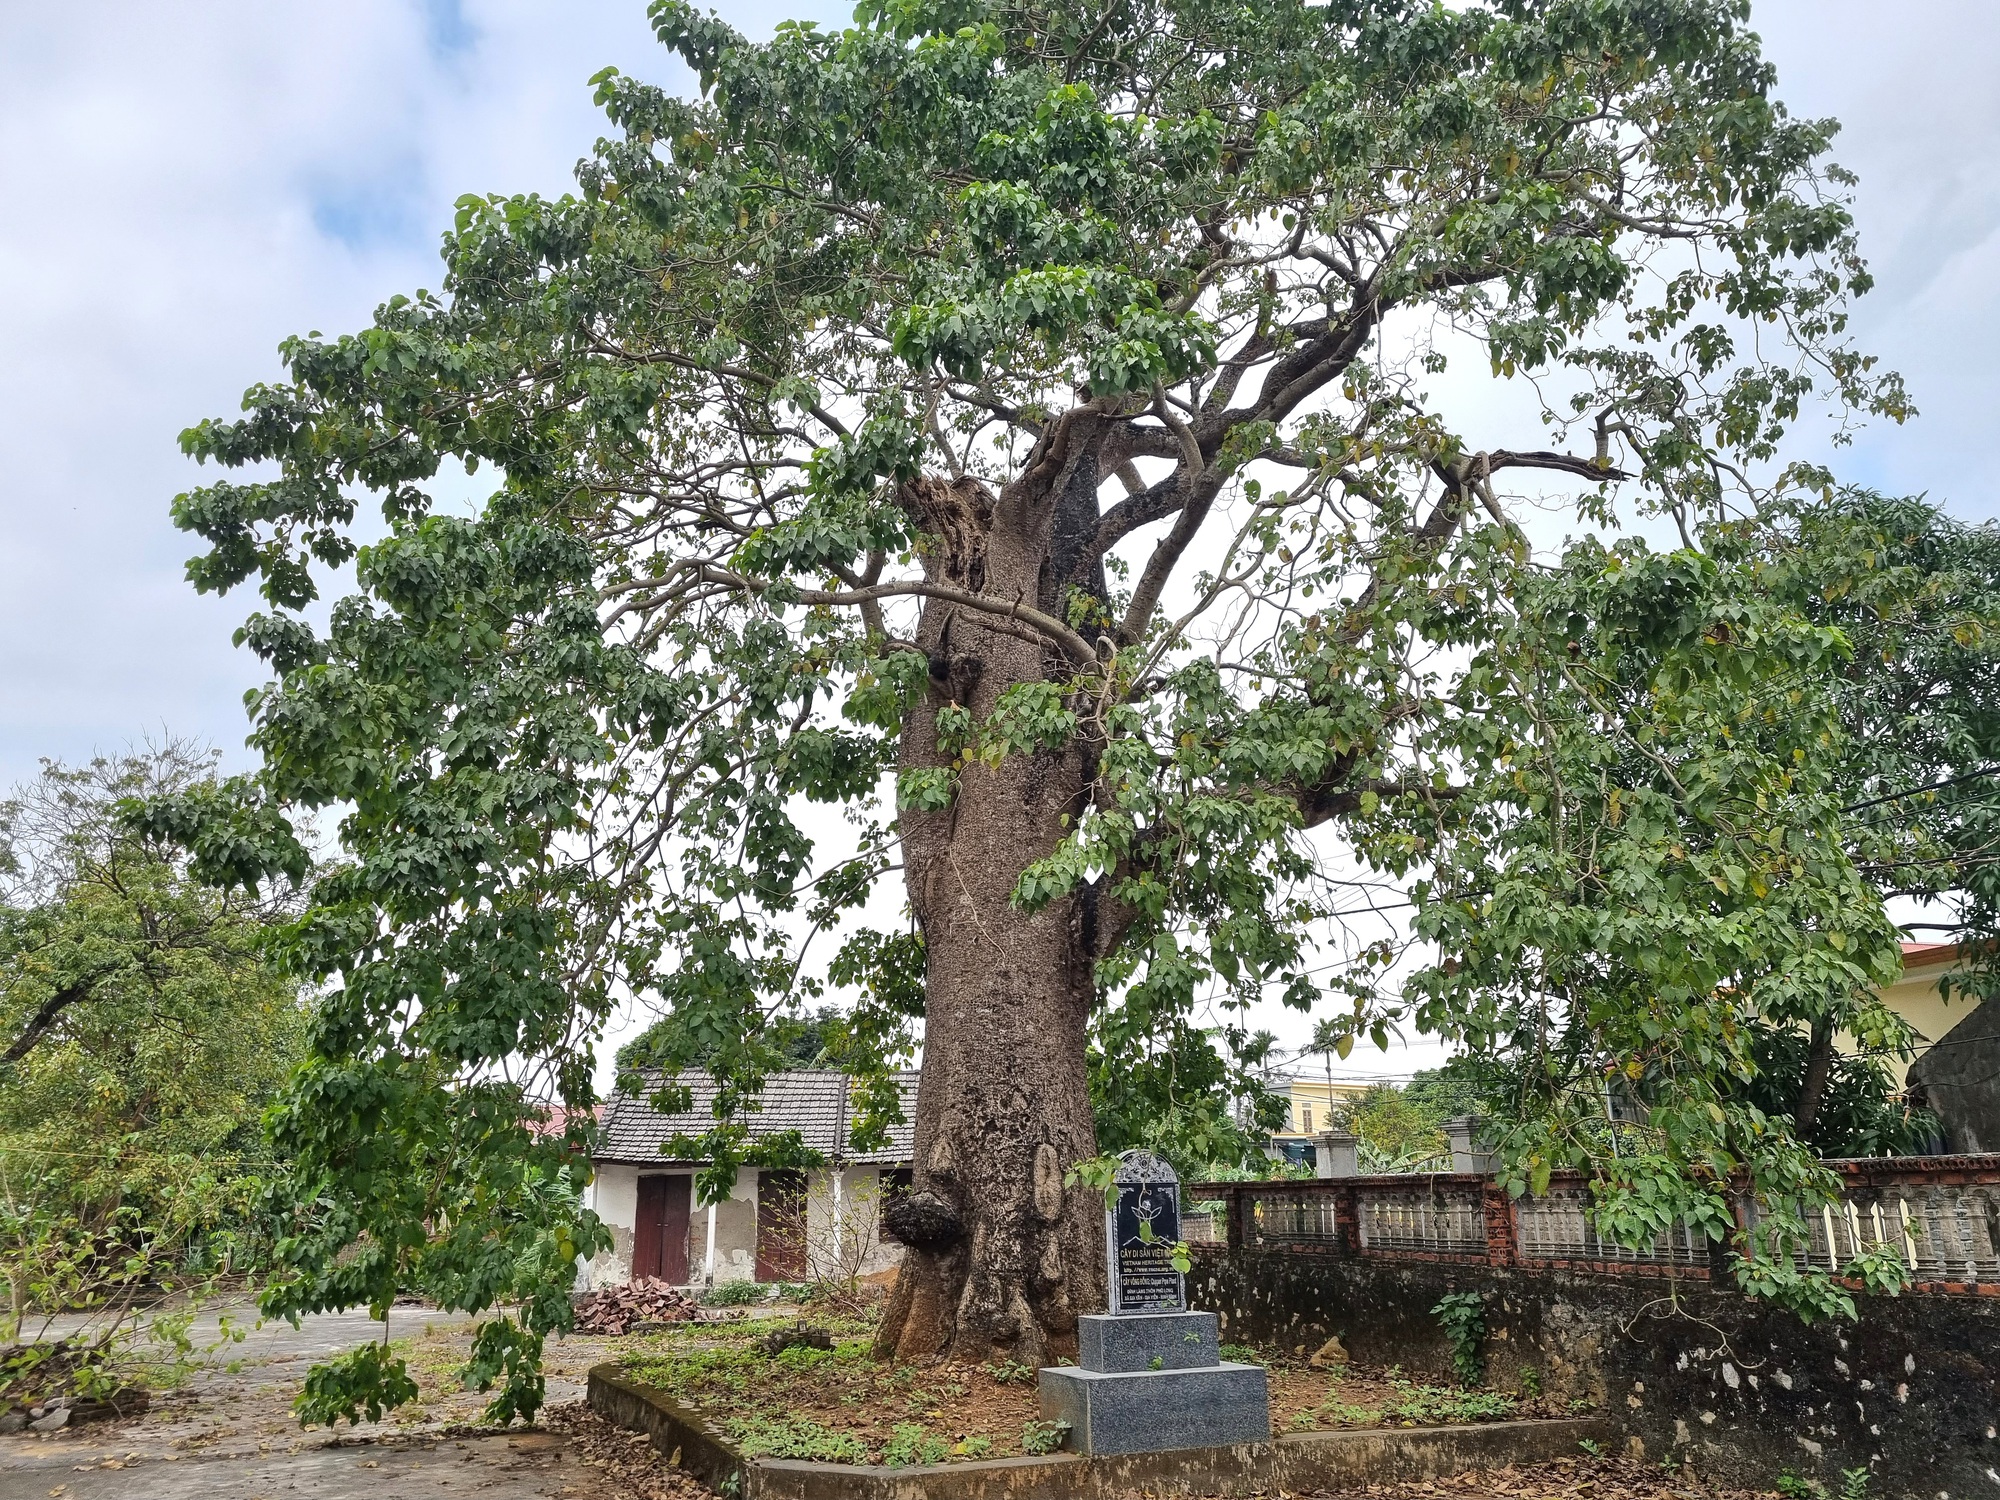 Cận cảnh cây thị cổ hơn 700 năm với thân xù xì, cành lá xanh tốt ở Ninh Bình - Ảnh 8.